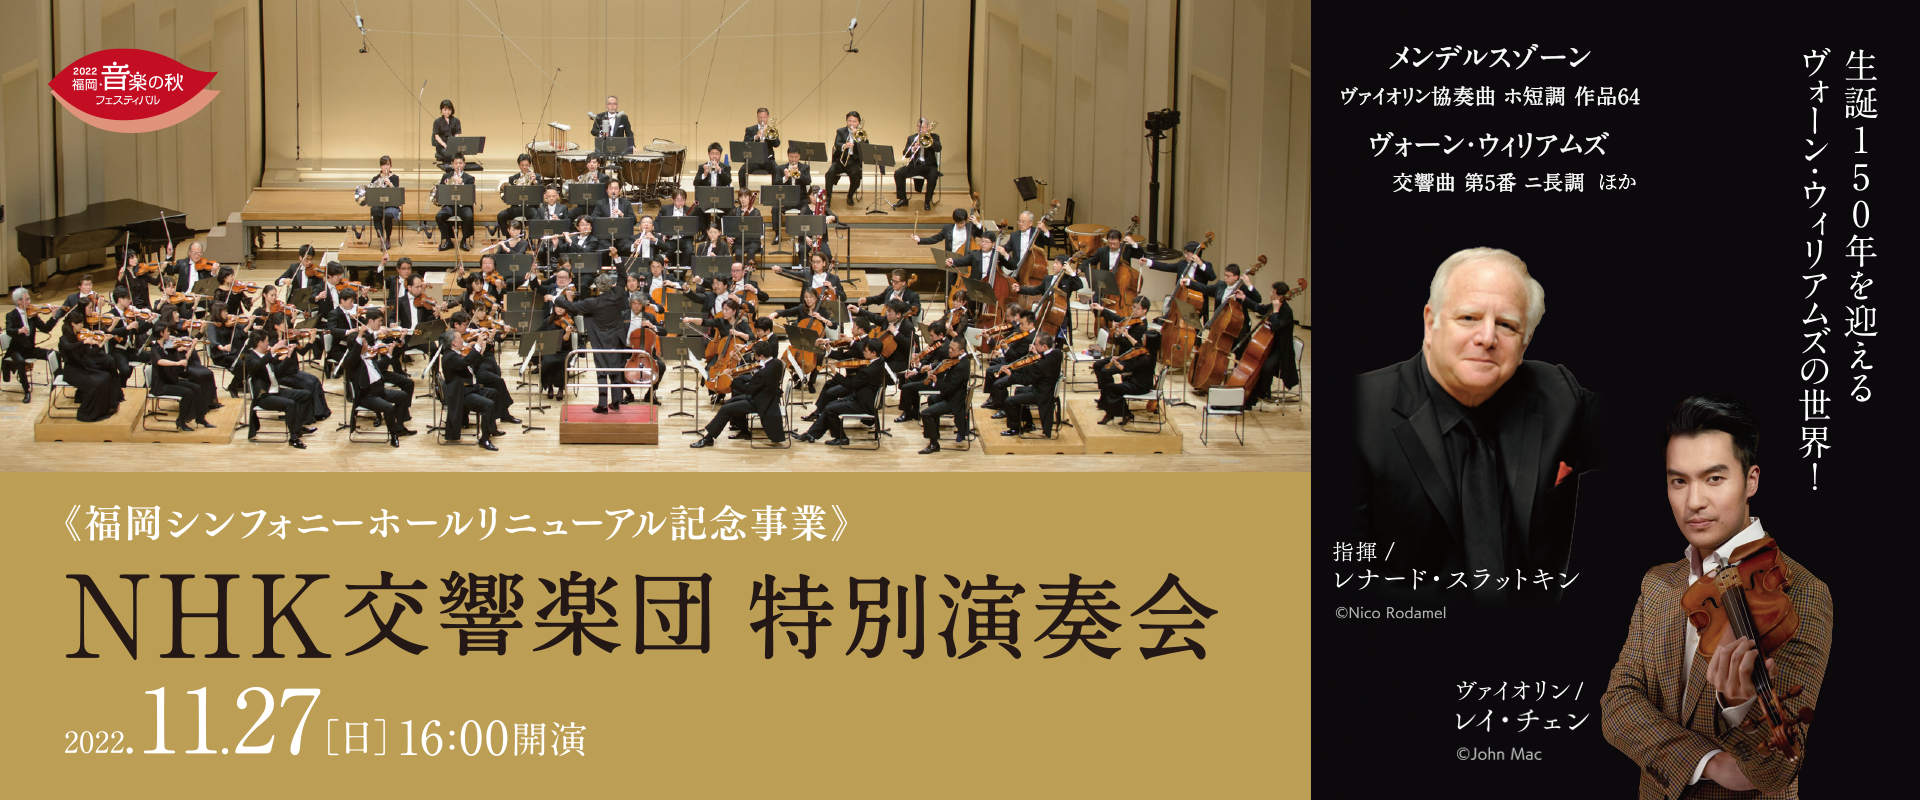 新着情報！NHK交響楽団 特別演奏会 マエストロよりメッセージが届きました